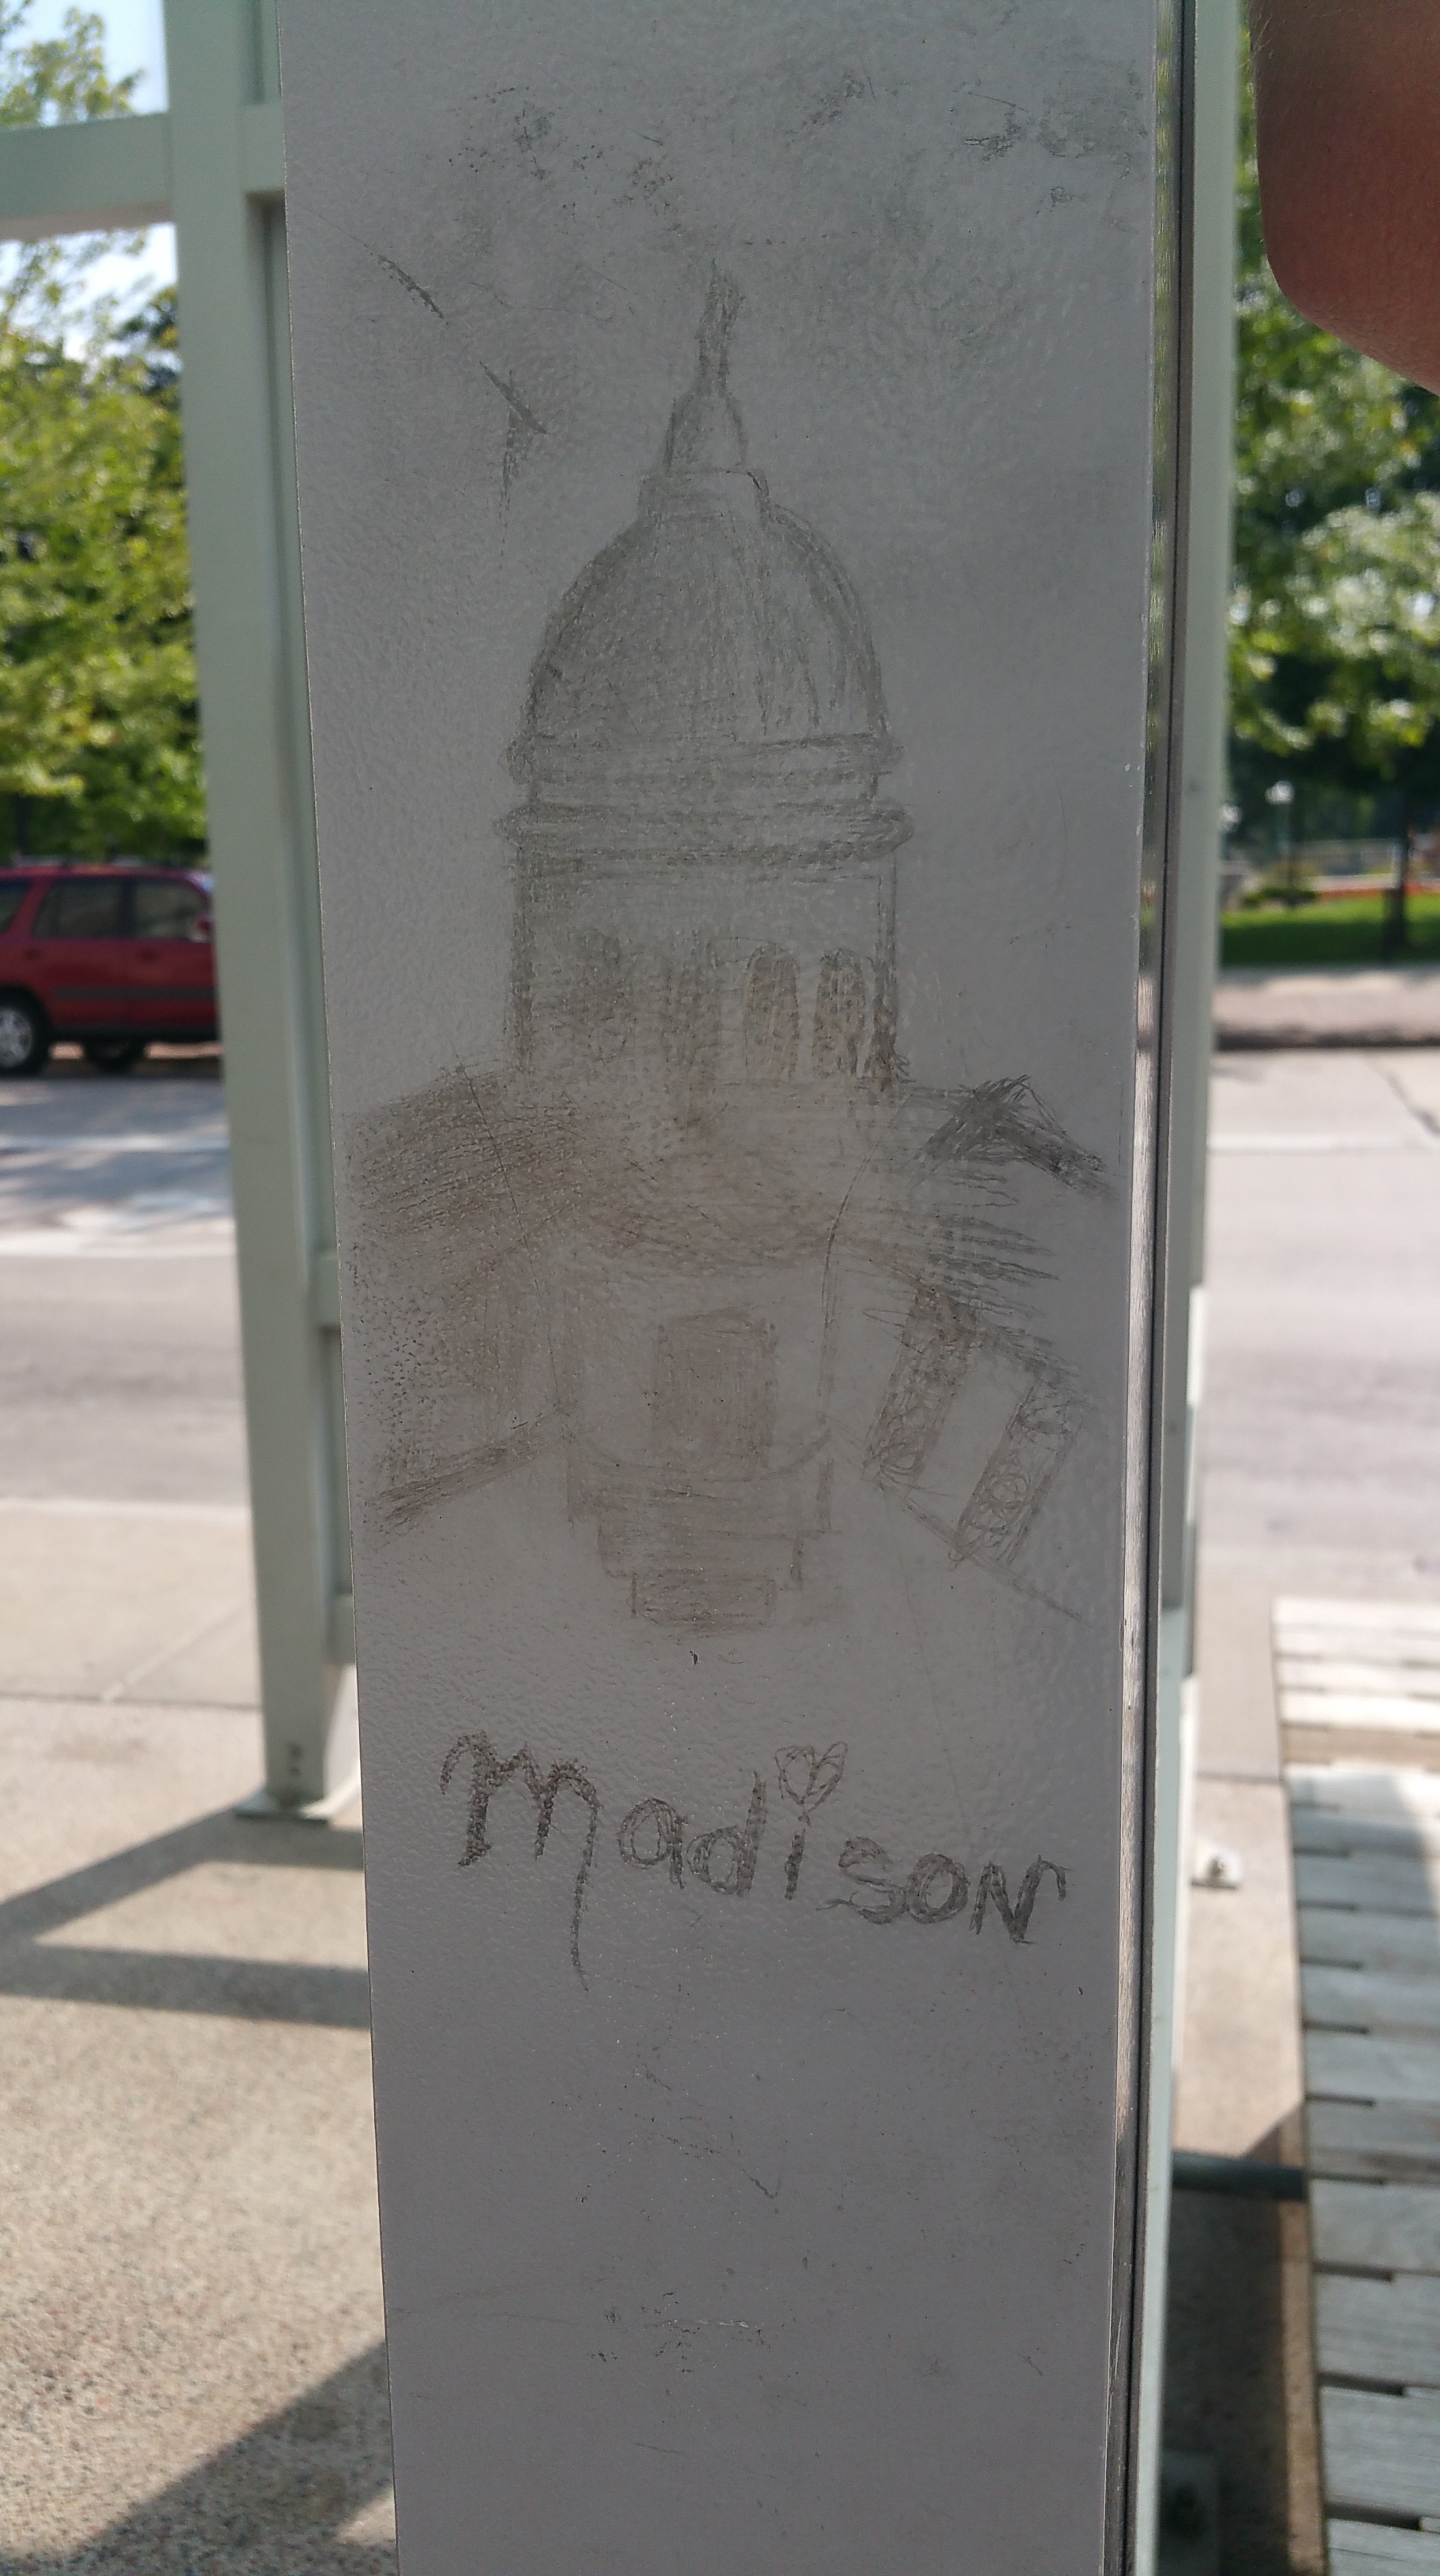 Madison - et flott sted å være!